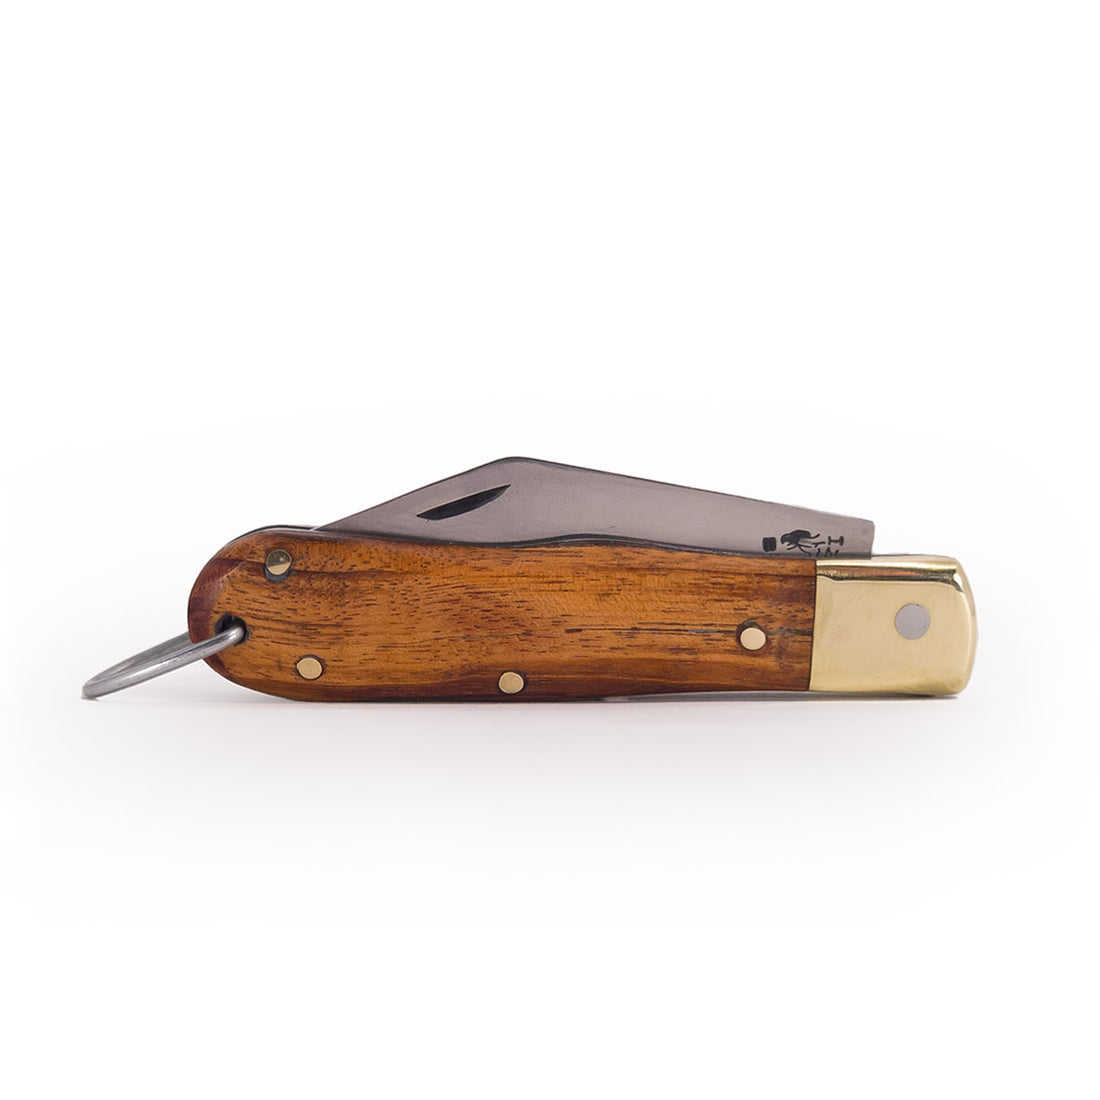 Canivete clássico modelo R3 com lâmina em aço inox e cabo com talas de madeira de jacarandá.